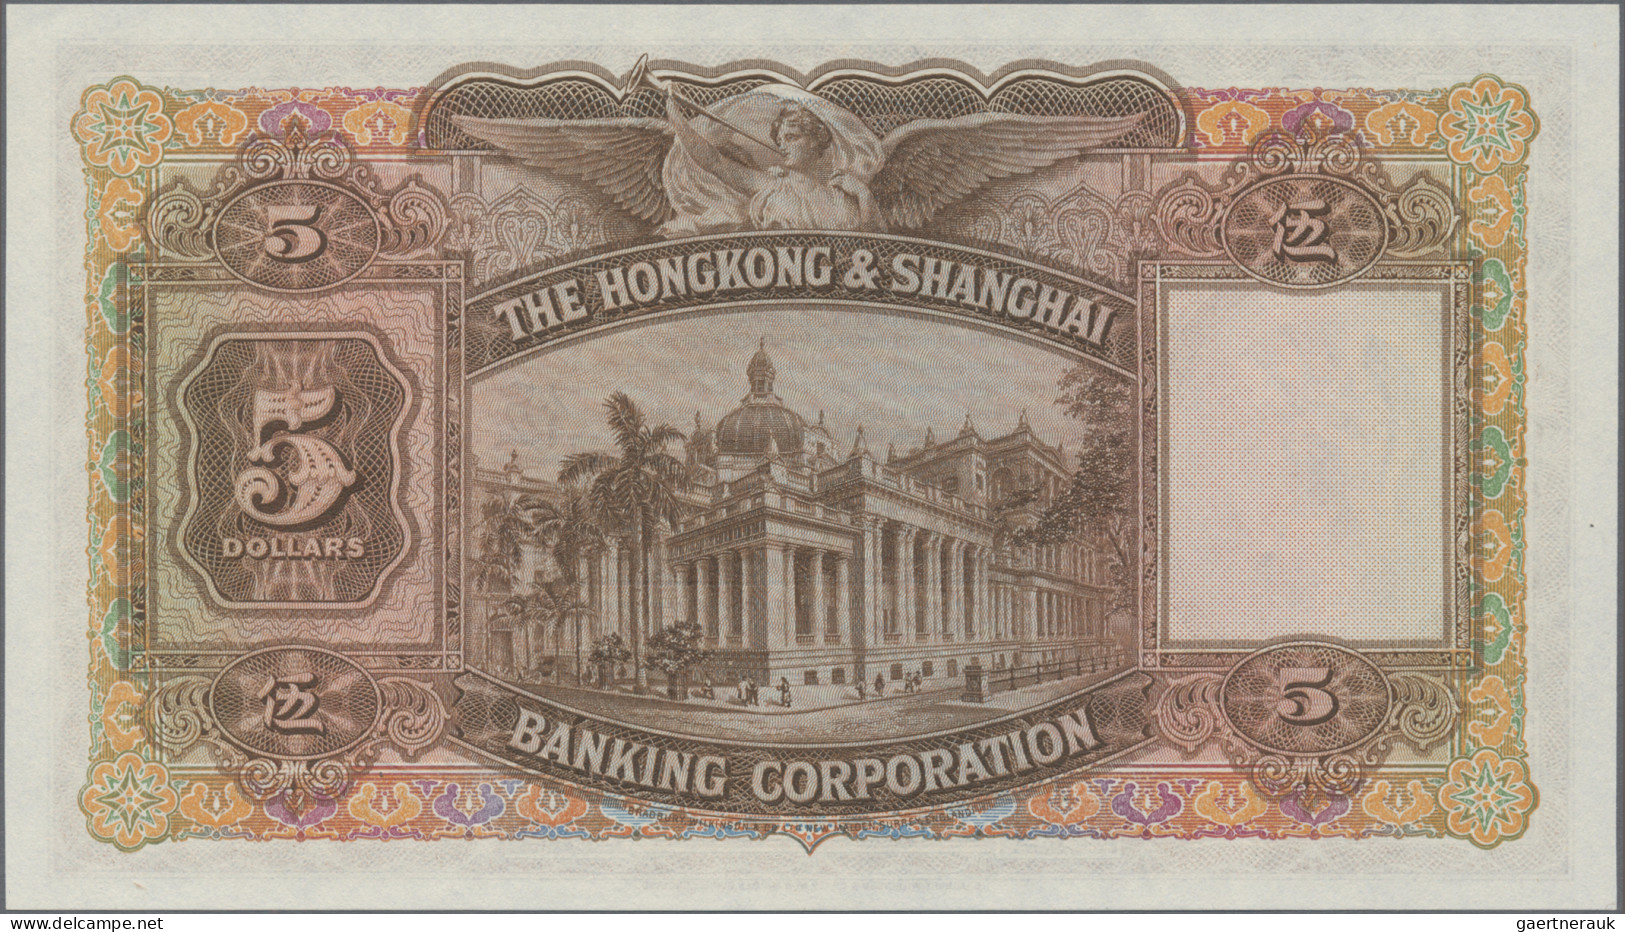 Hong Kong: The Hong Kong & Shanghai Banking Corporation, 5 Dollars 20th February - Hong Kong